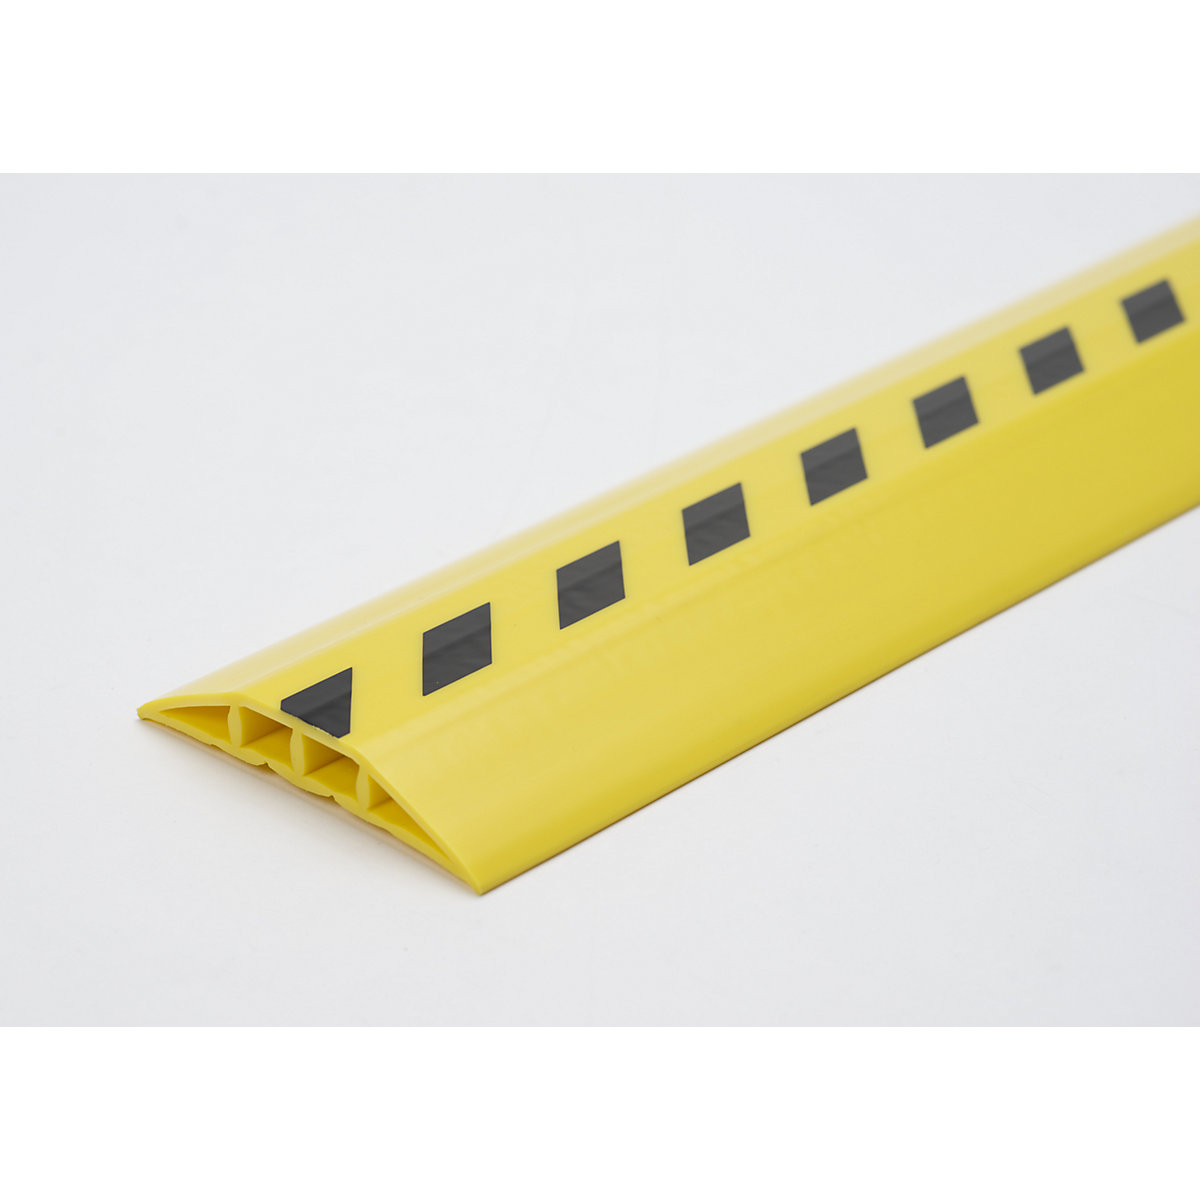 Káblový mostík z plastu, pre káble a hadice do Ø 10 mm, čierna-žltá, 2 komory, dĺžka 1,5 m-4